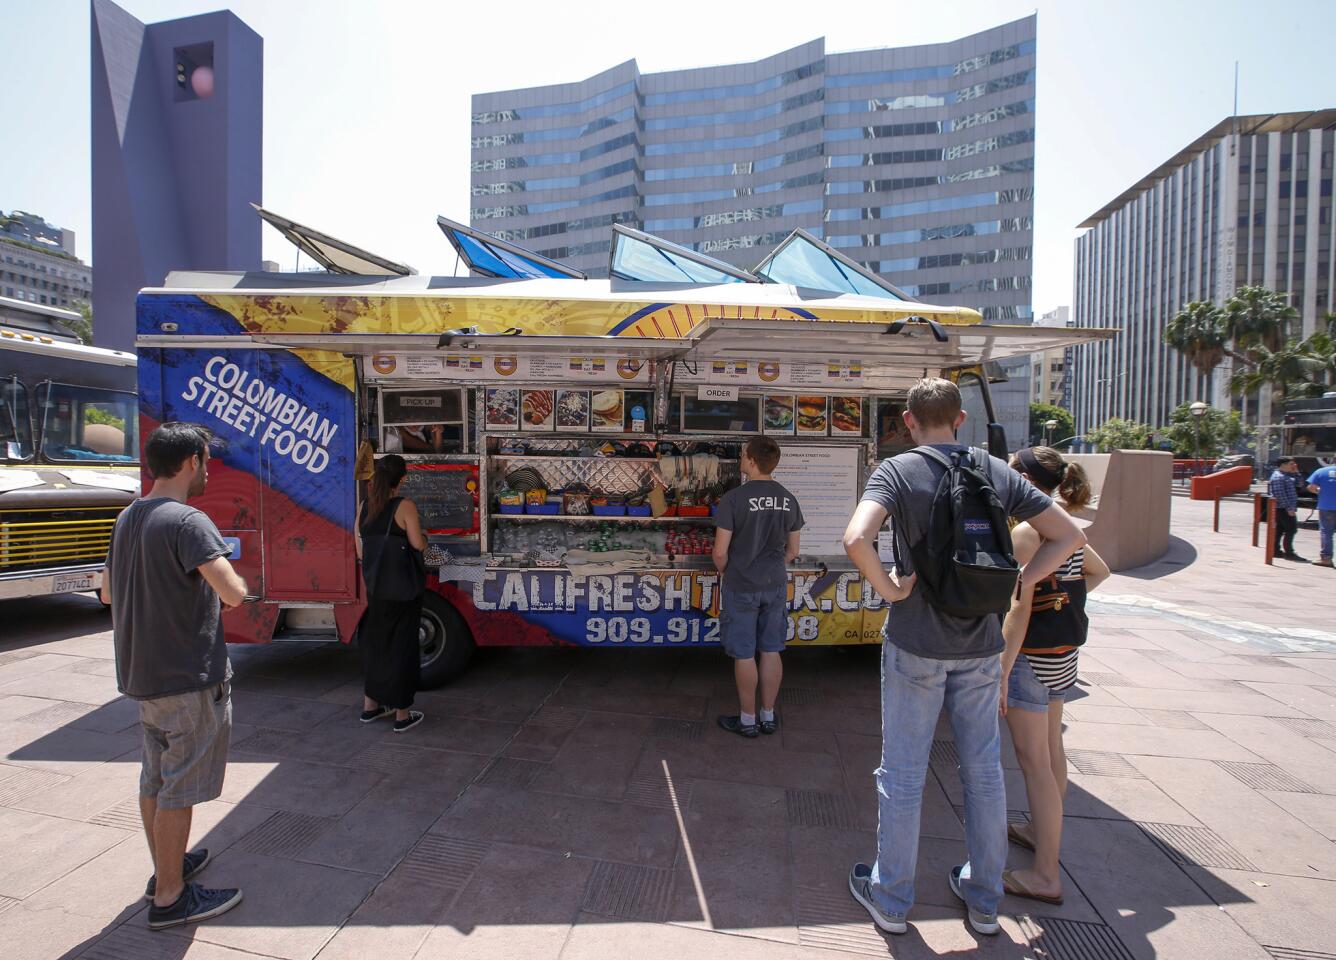 Cali Fresh food truck